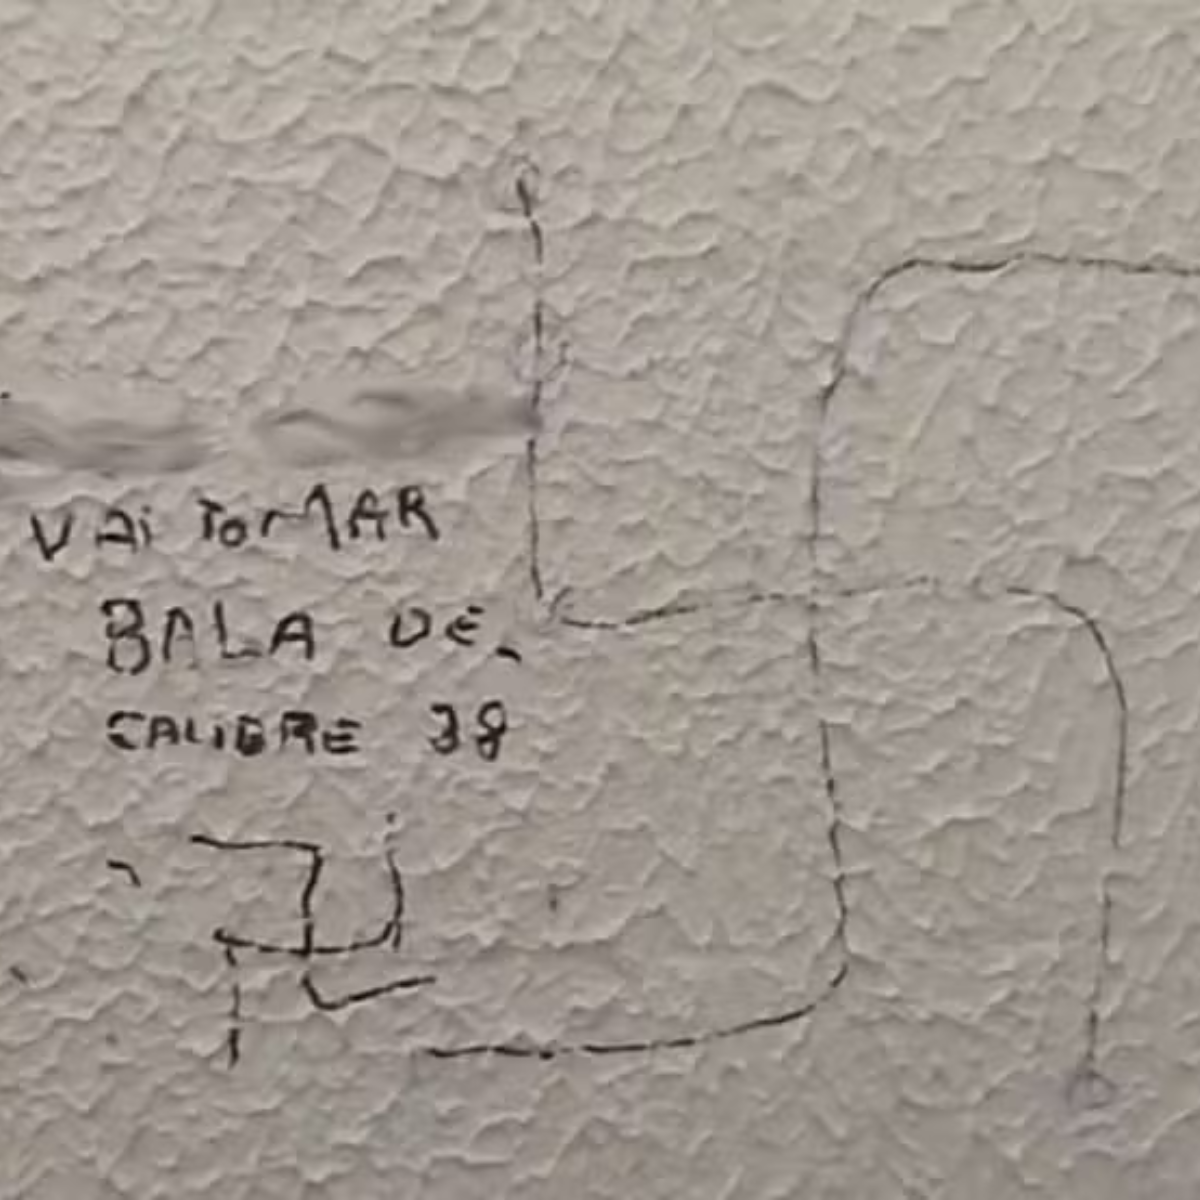  Pichações em banheiro da Unicentro em Guarapuava 